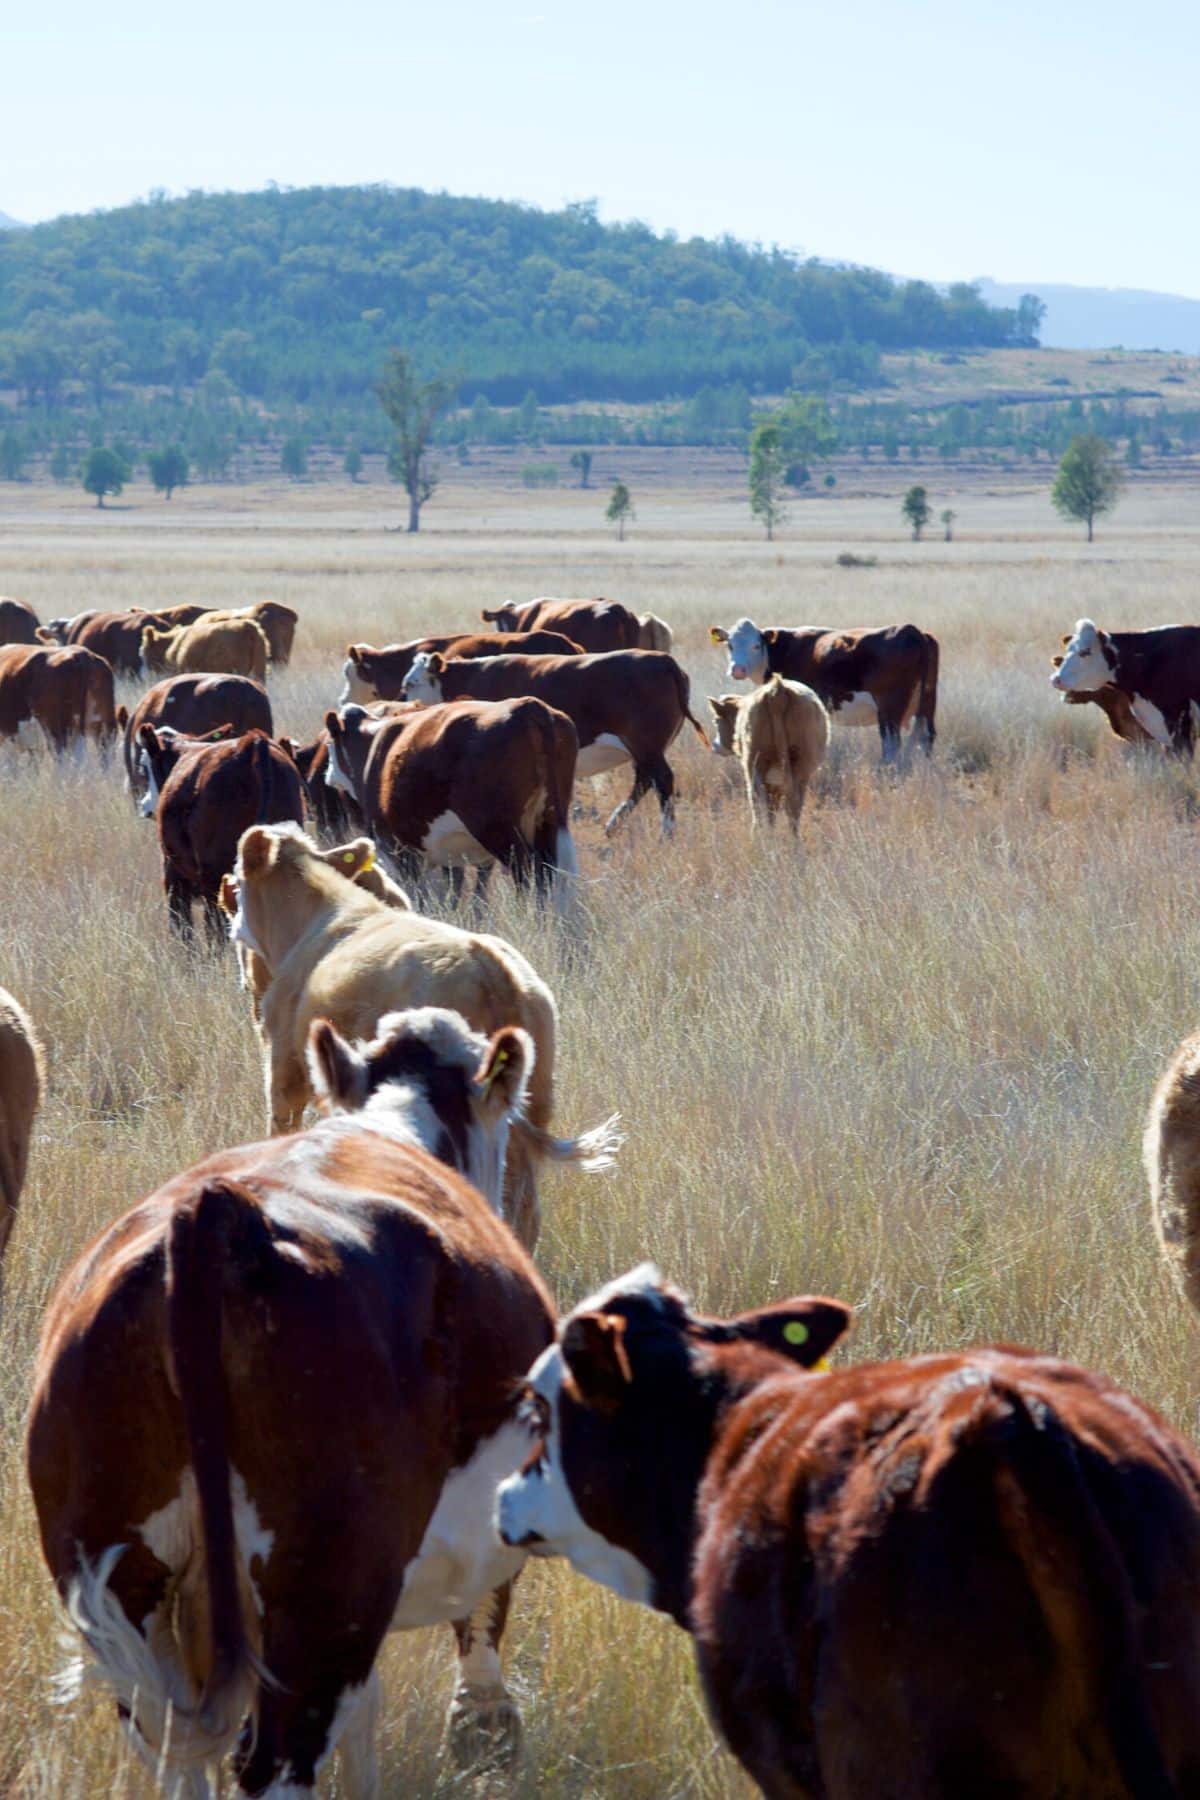 herd of cattle in a grassy field.